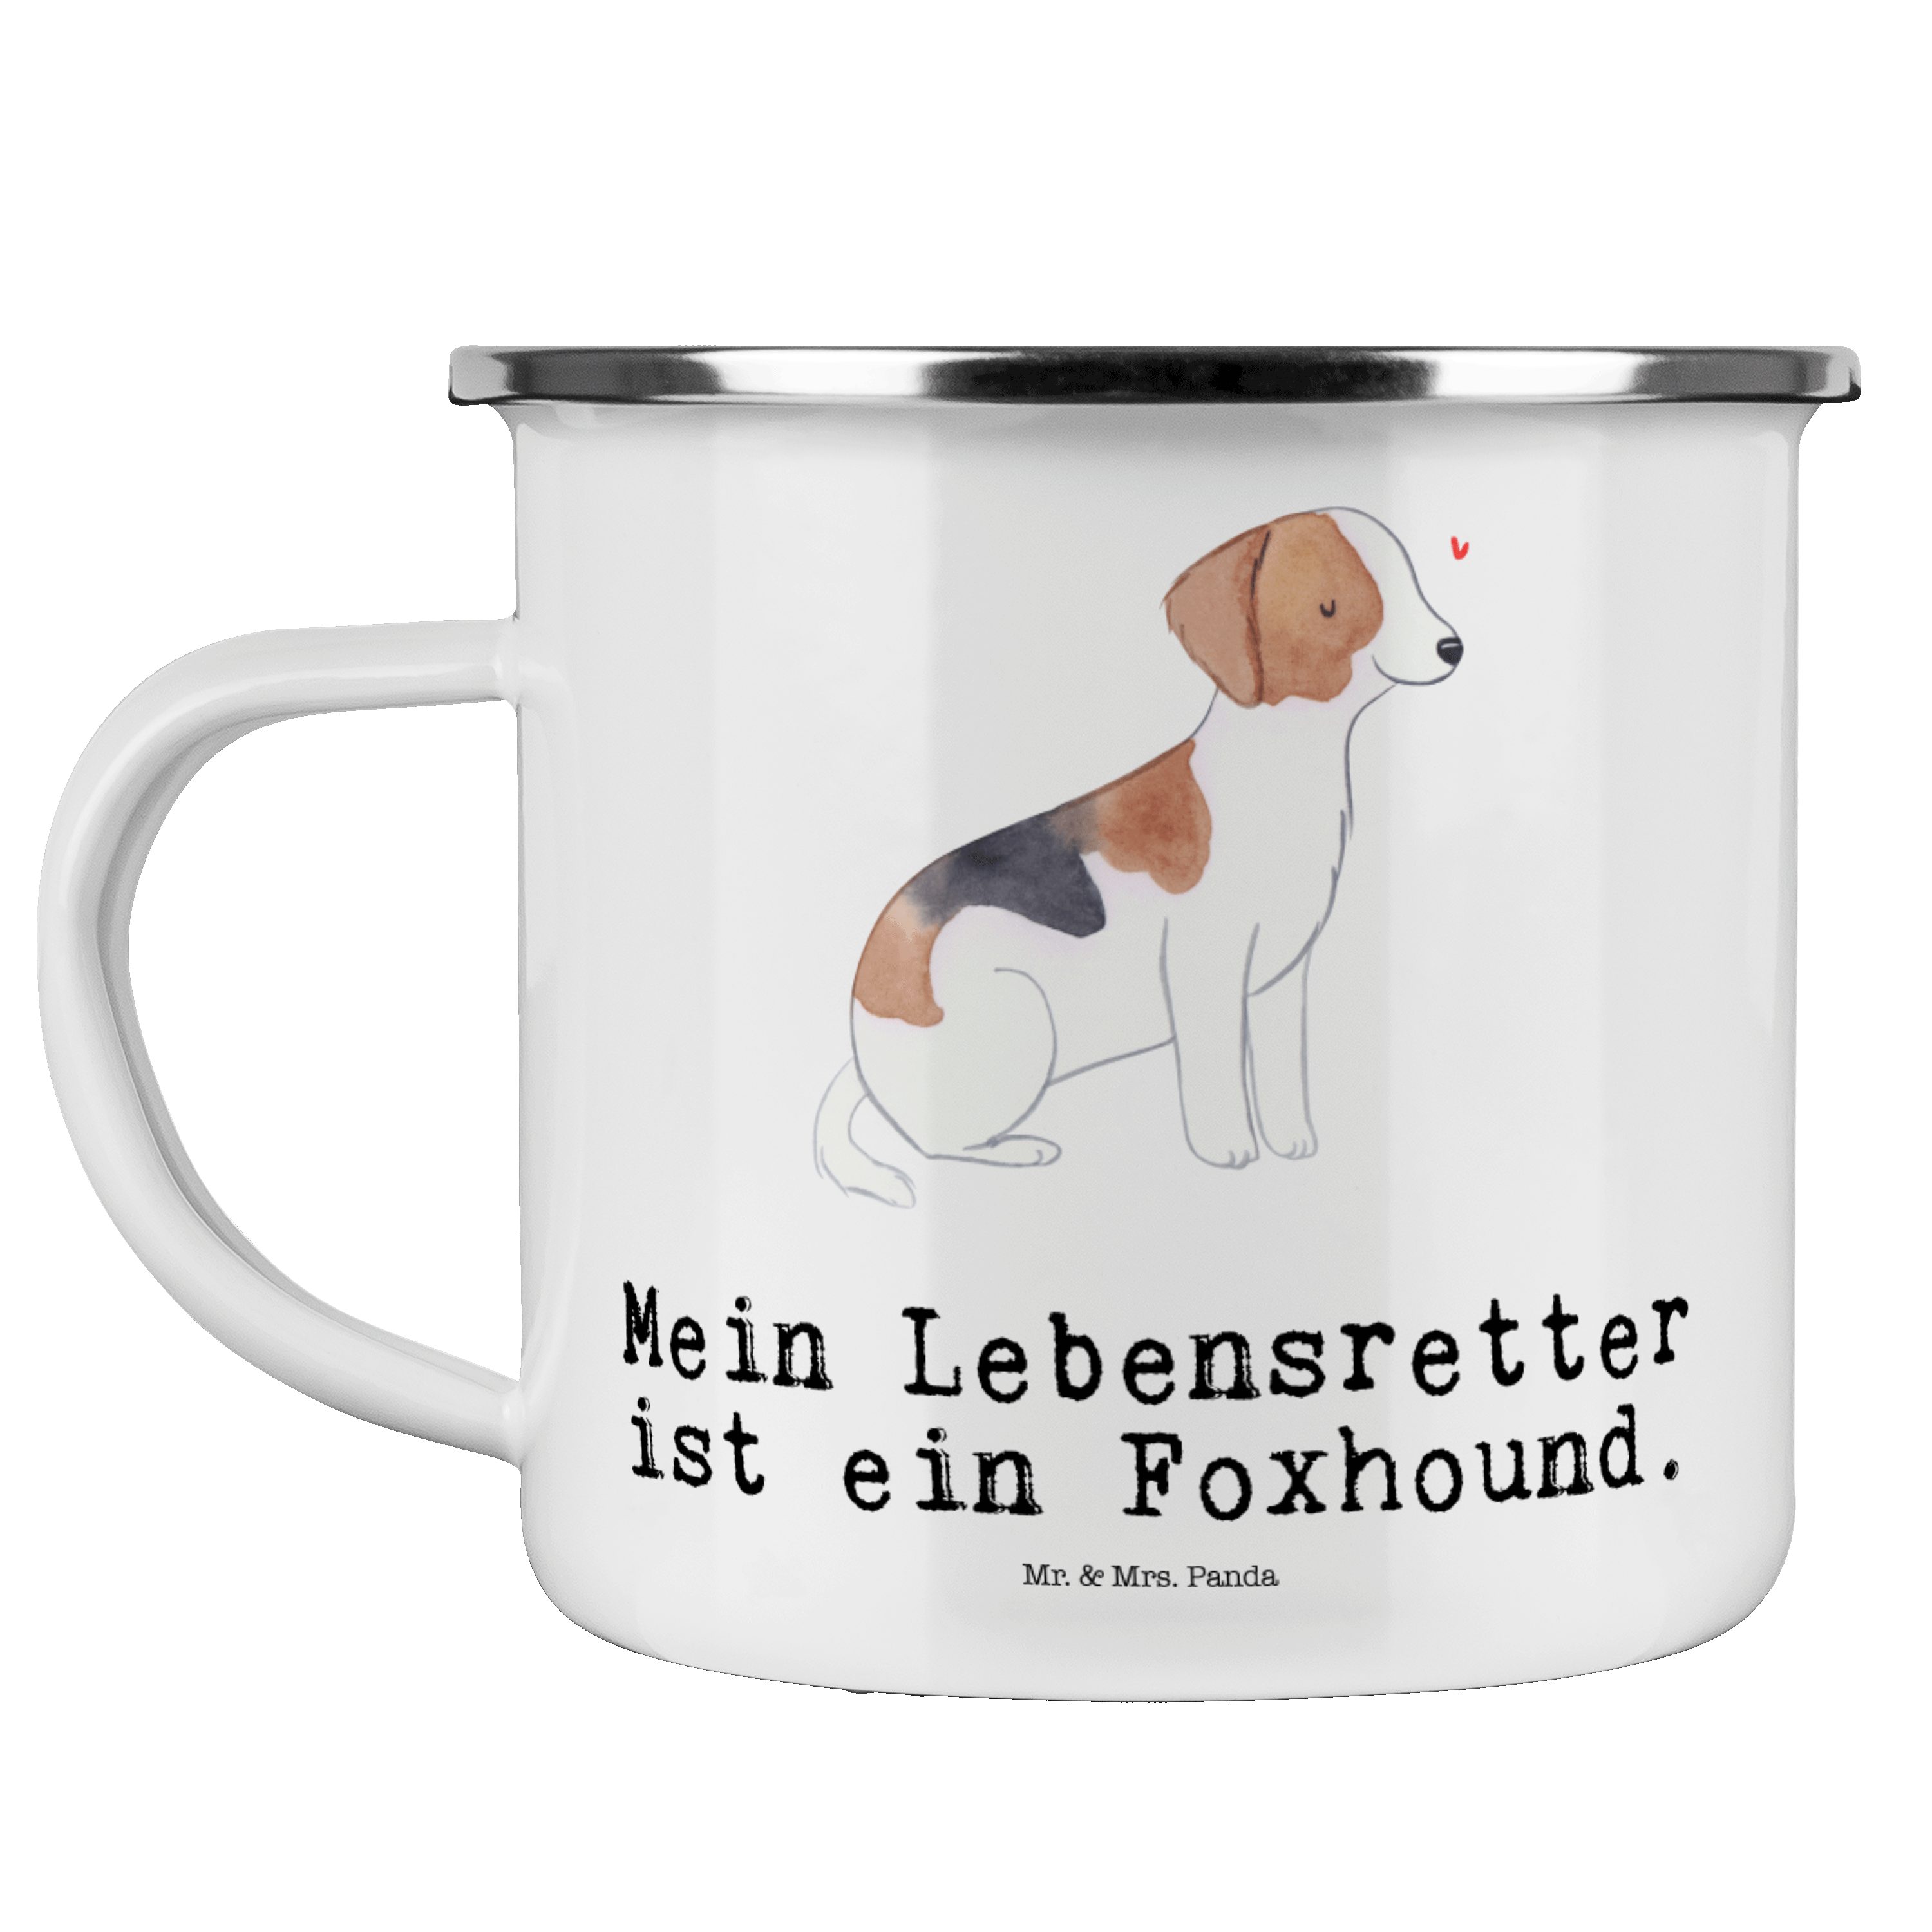 Mr. & Mrs. Panda Becher Foxhound Lebensretter - Weiß - Geschenk, Laufhund, Emaille Trinkbeche, Emaille